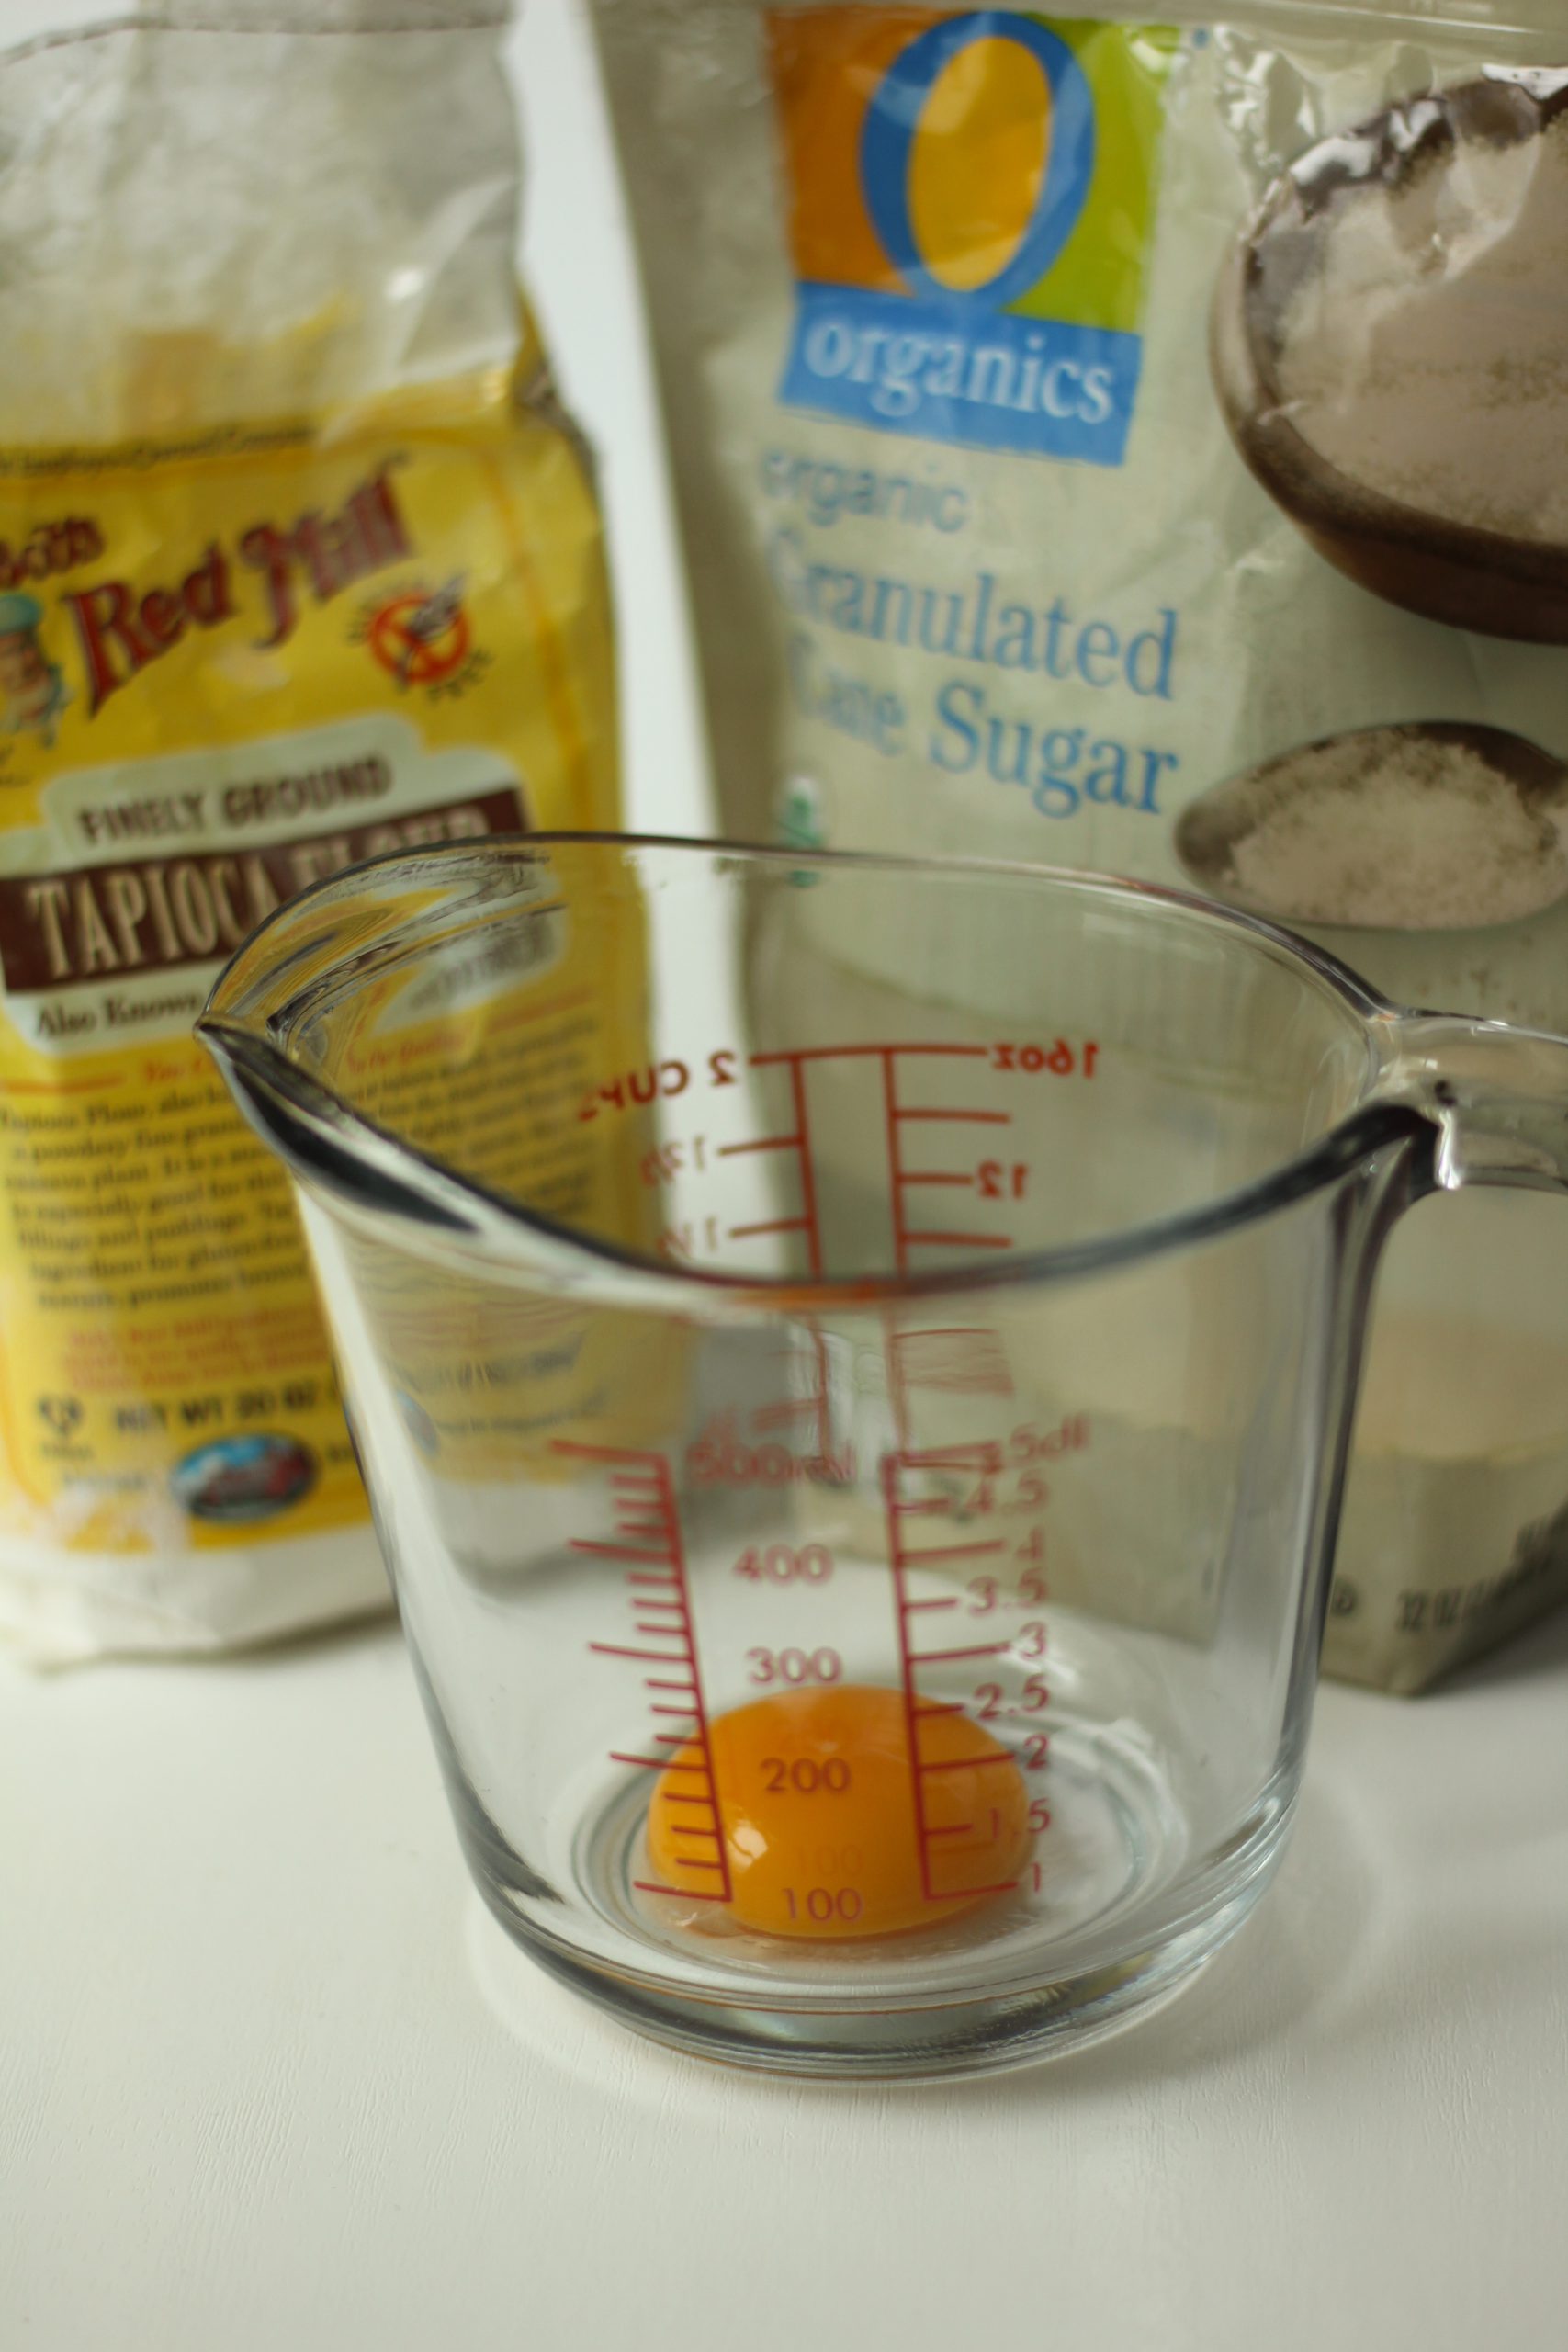 Egg yolk ready to add cane sugar